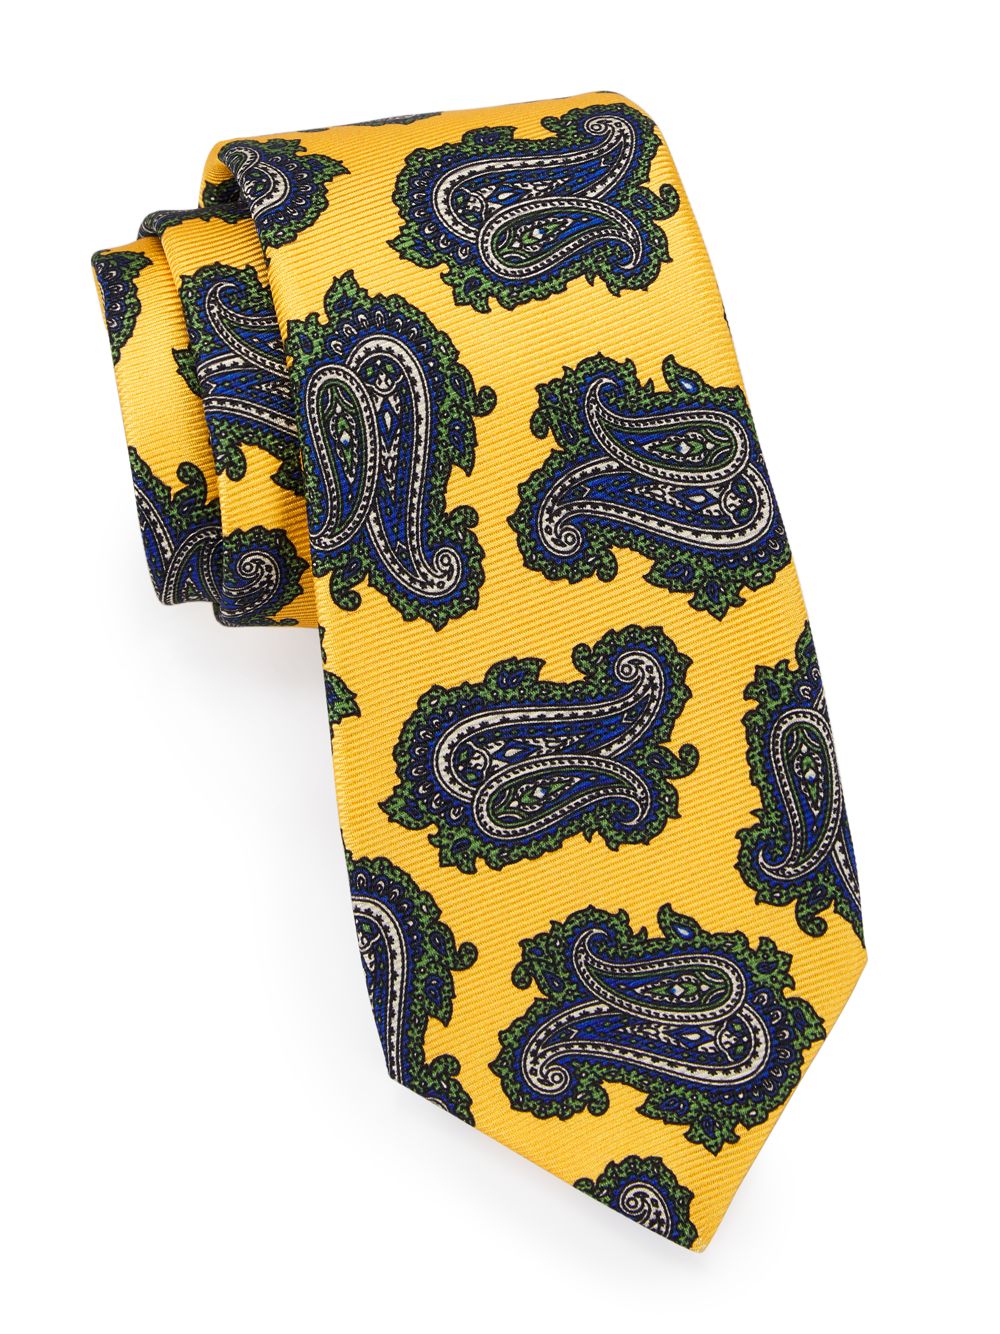 Шелковый галстук с узором пейсли Kiton, желтый широкий желтый галстук с узором benjamin james 811575